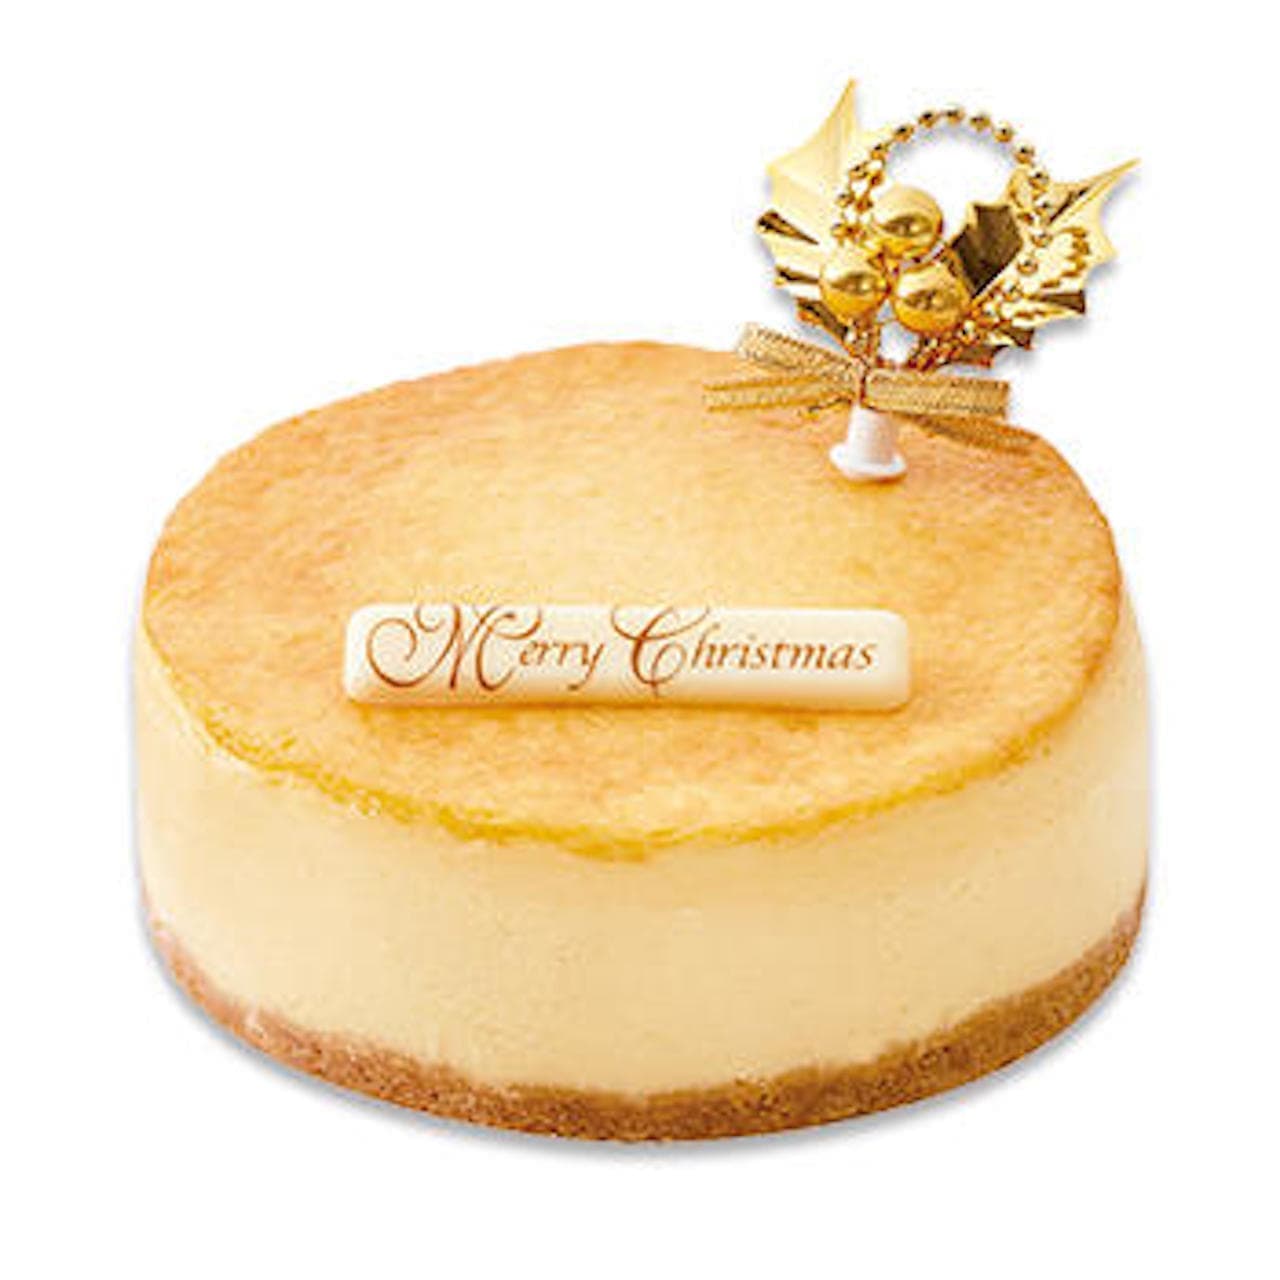 Fujiya "Christmas Rich Baked Cheesecake"